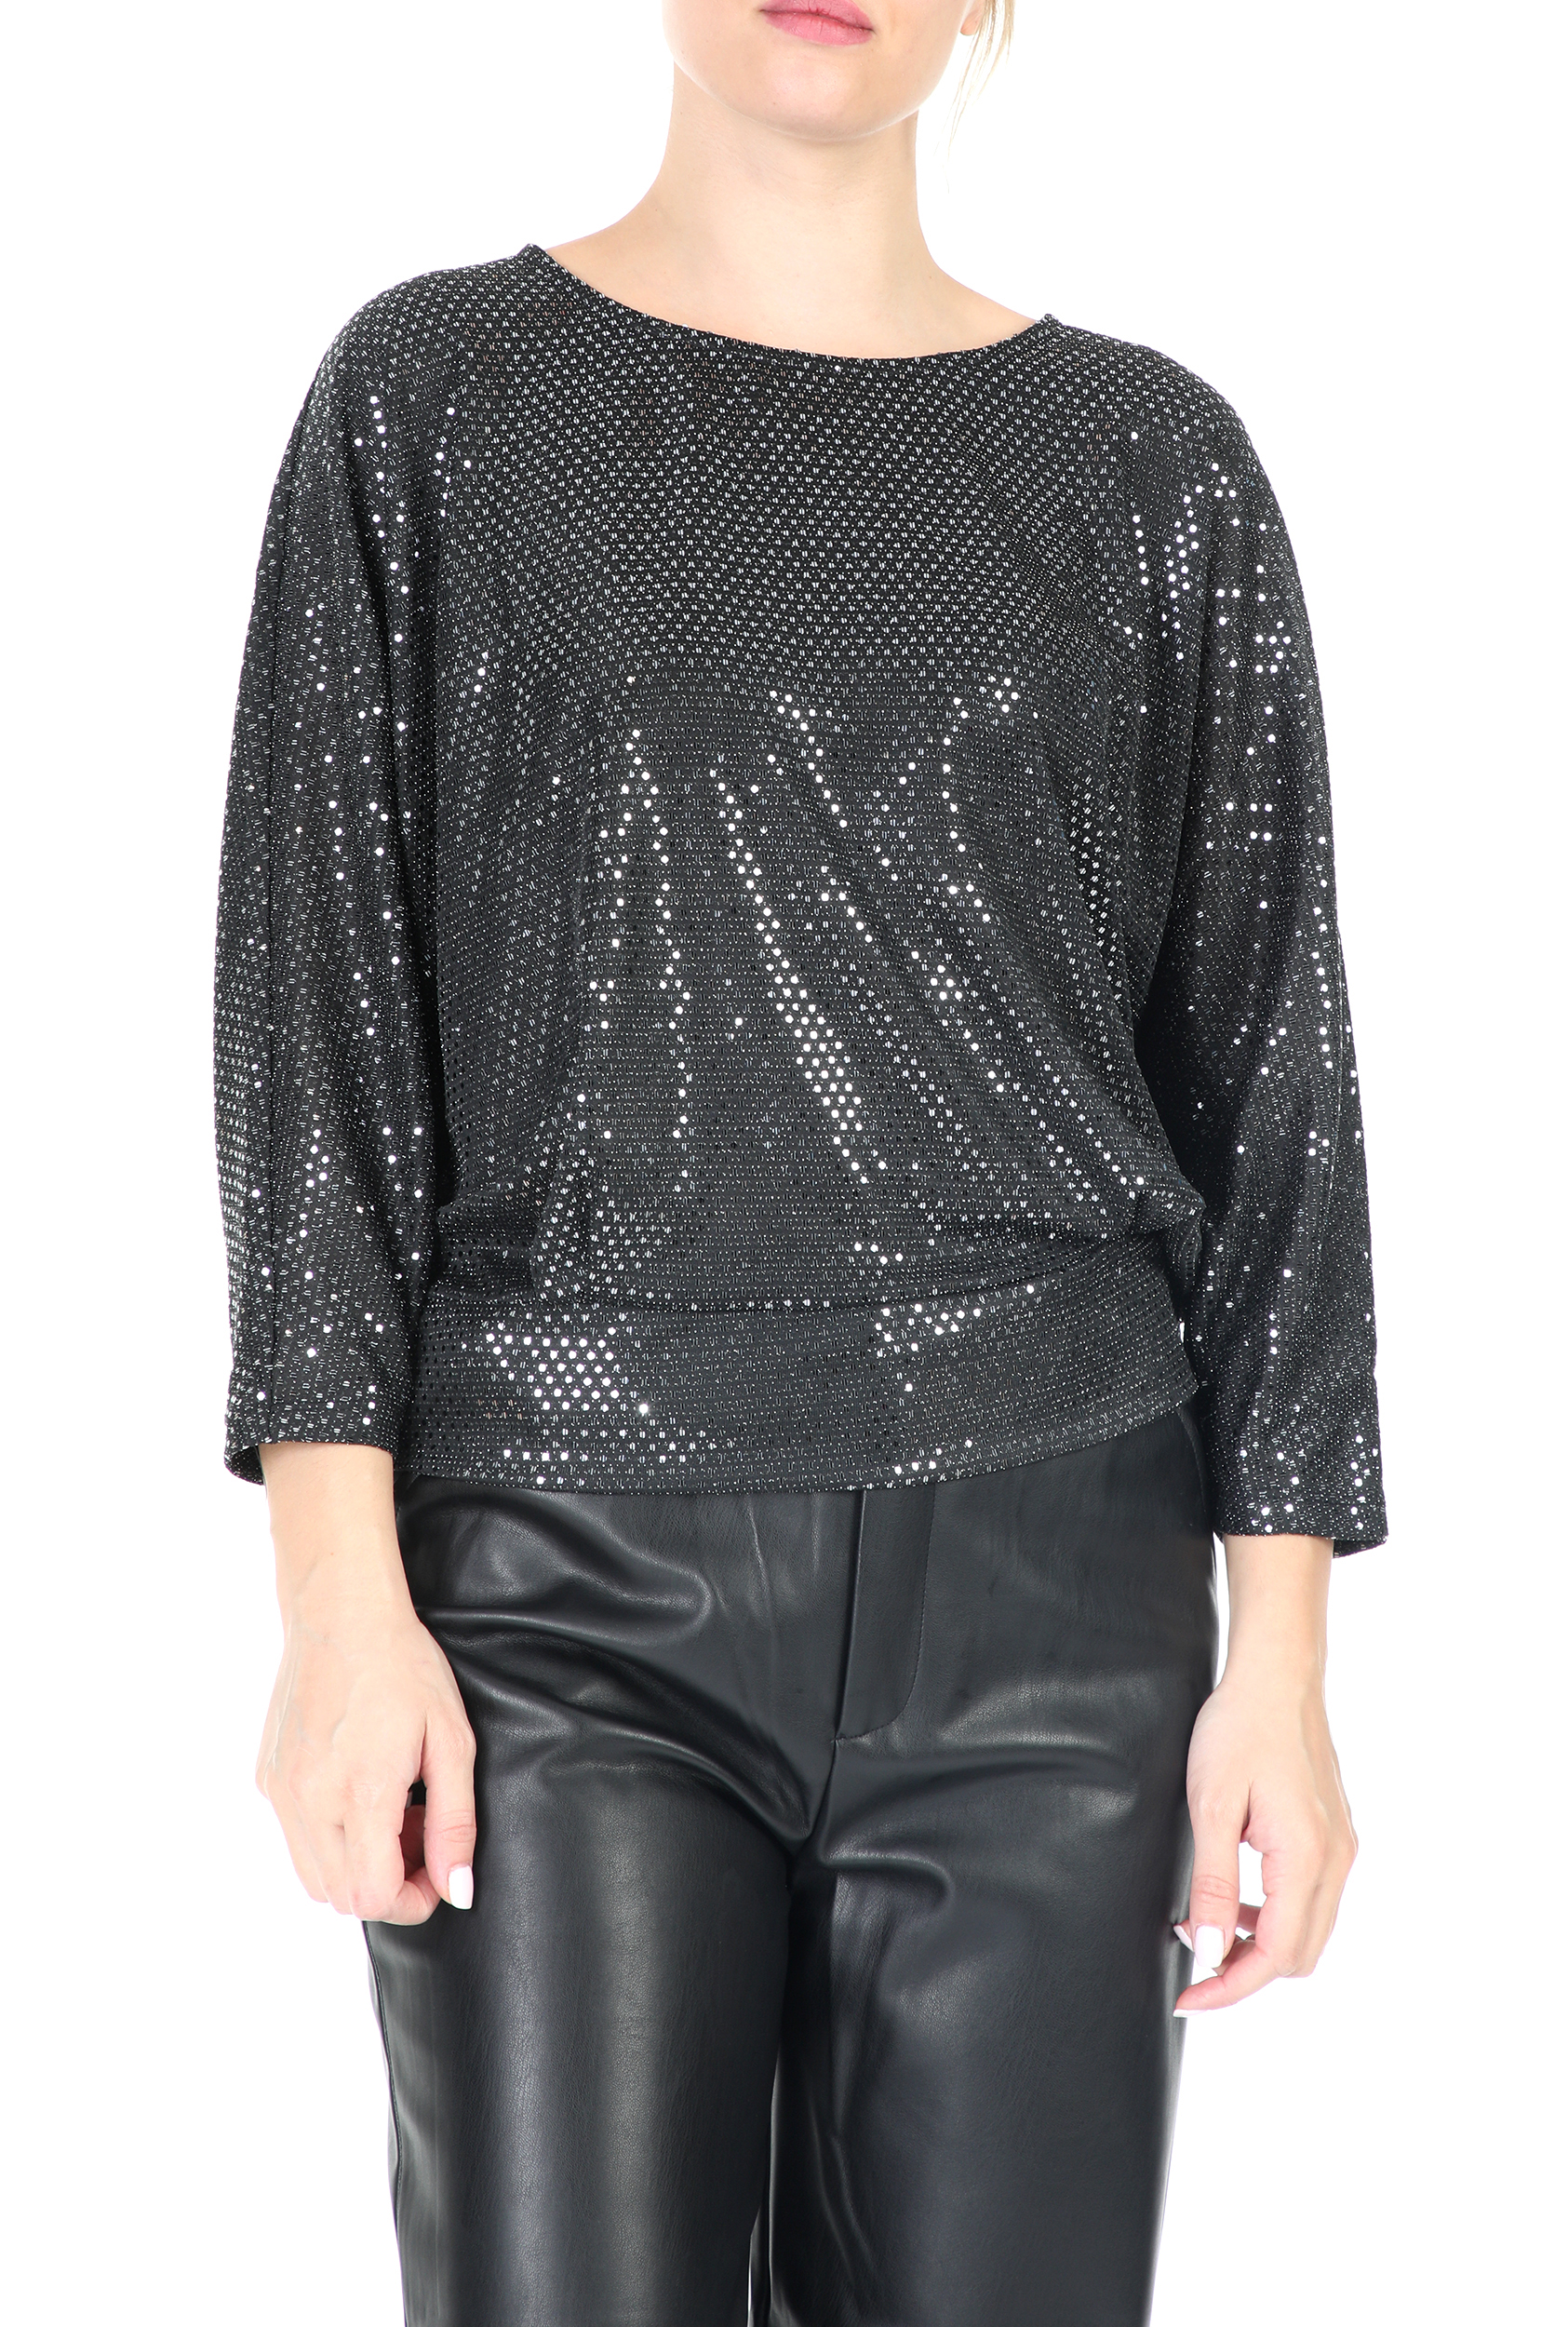 Γυναικεία/Ρούχα/Μπλούζες/Μακρυμάνικες LA DOLLS - Γυναικεία μακρυμάνικη μπλούζα LA DOLLS μαύρη